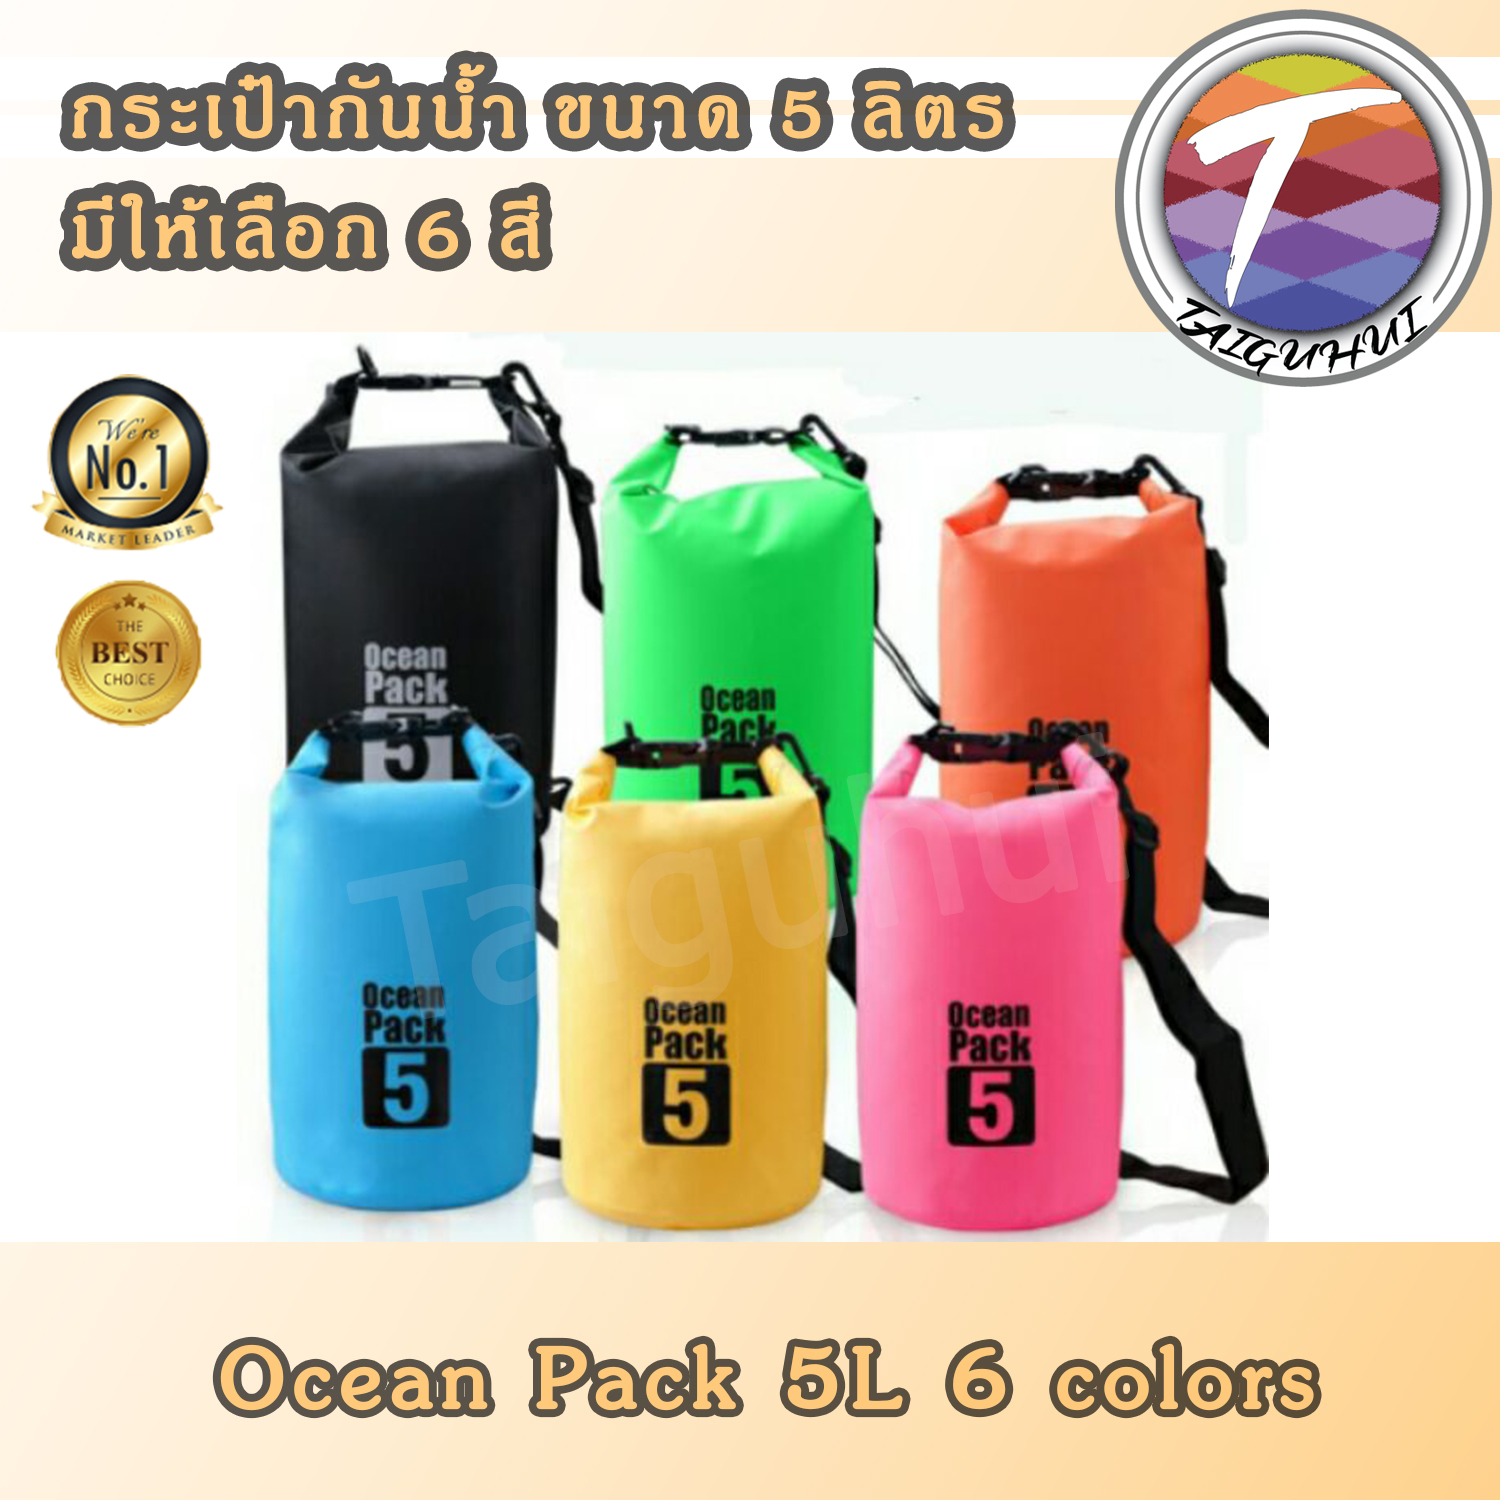 Ocean Pack 5L กระเป๋ากันน้ำ ขนาด 5ลิตร